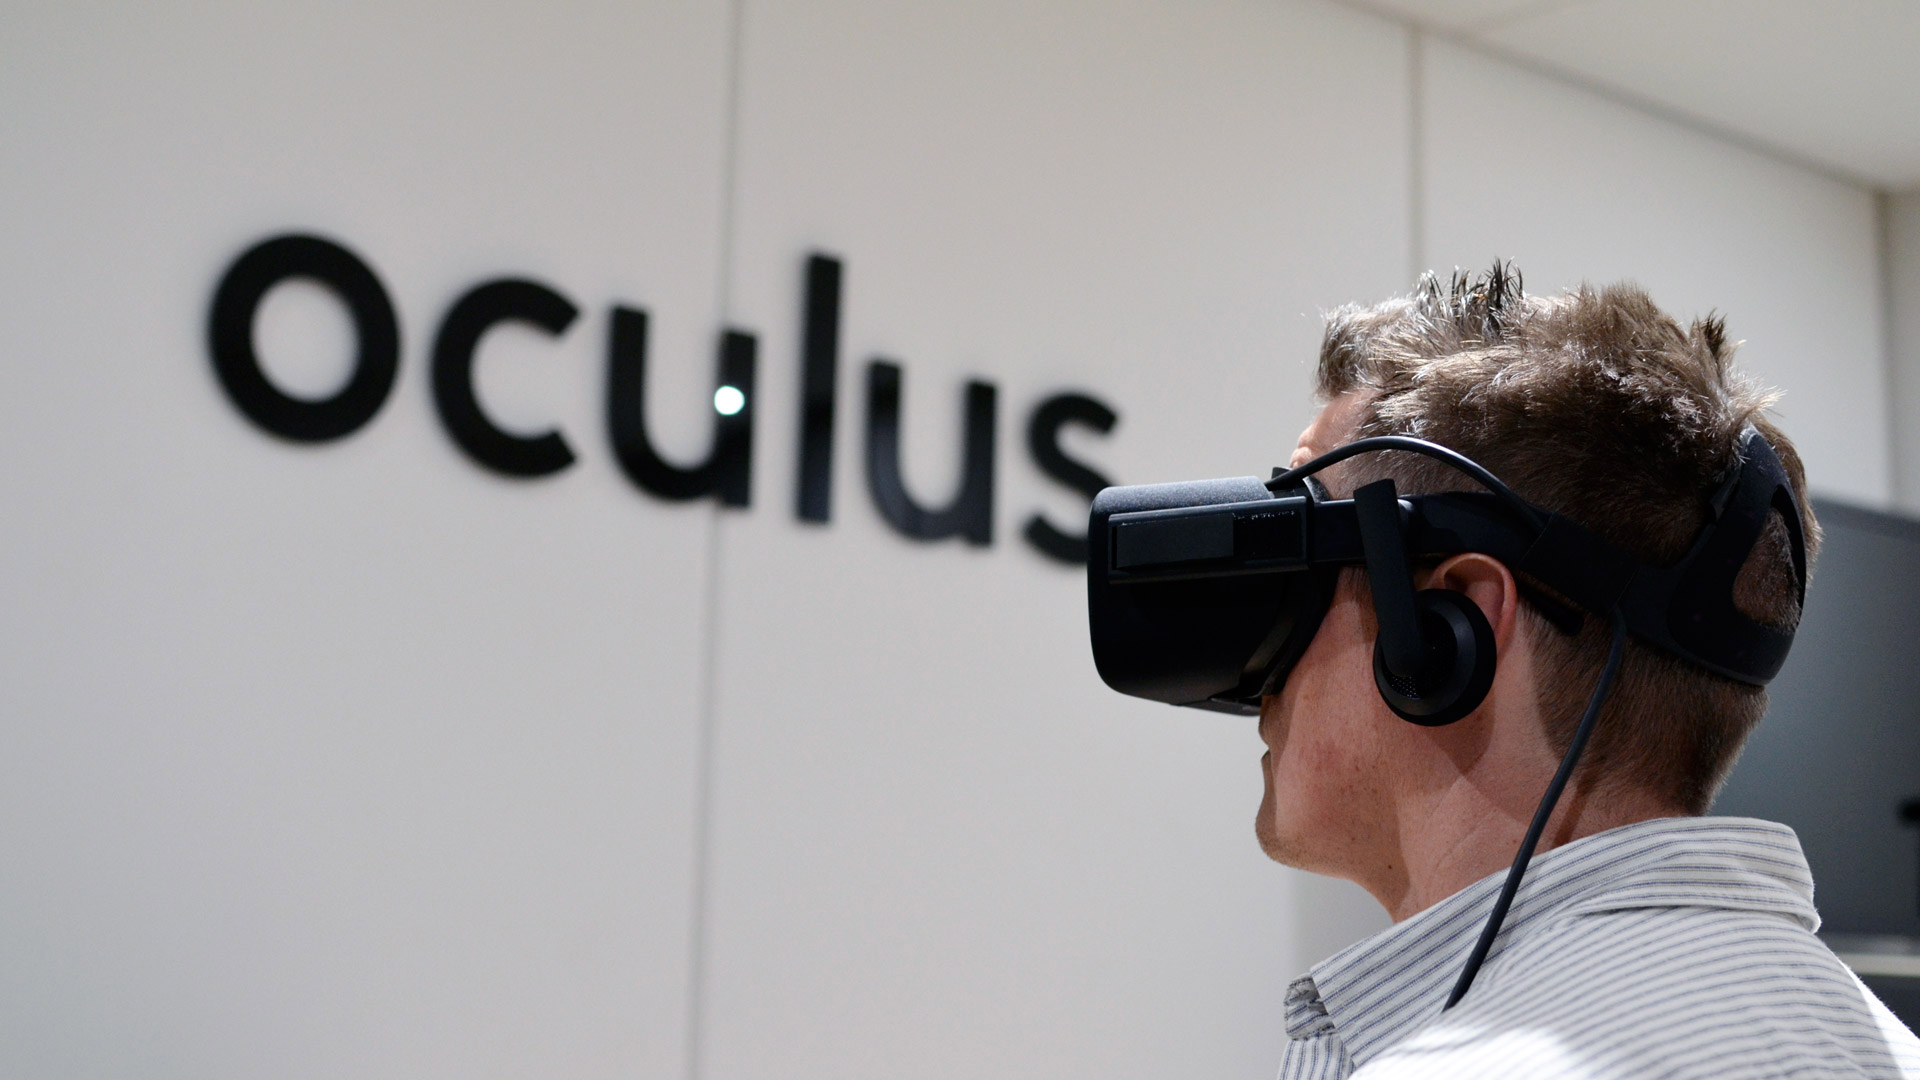 oculus rift usb 2.0